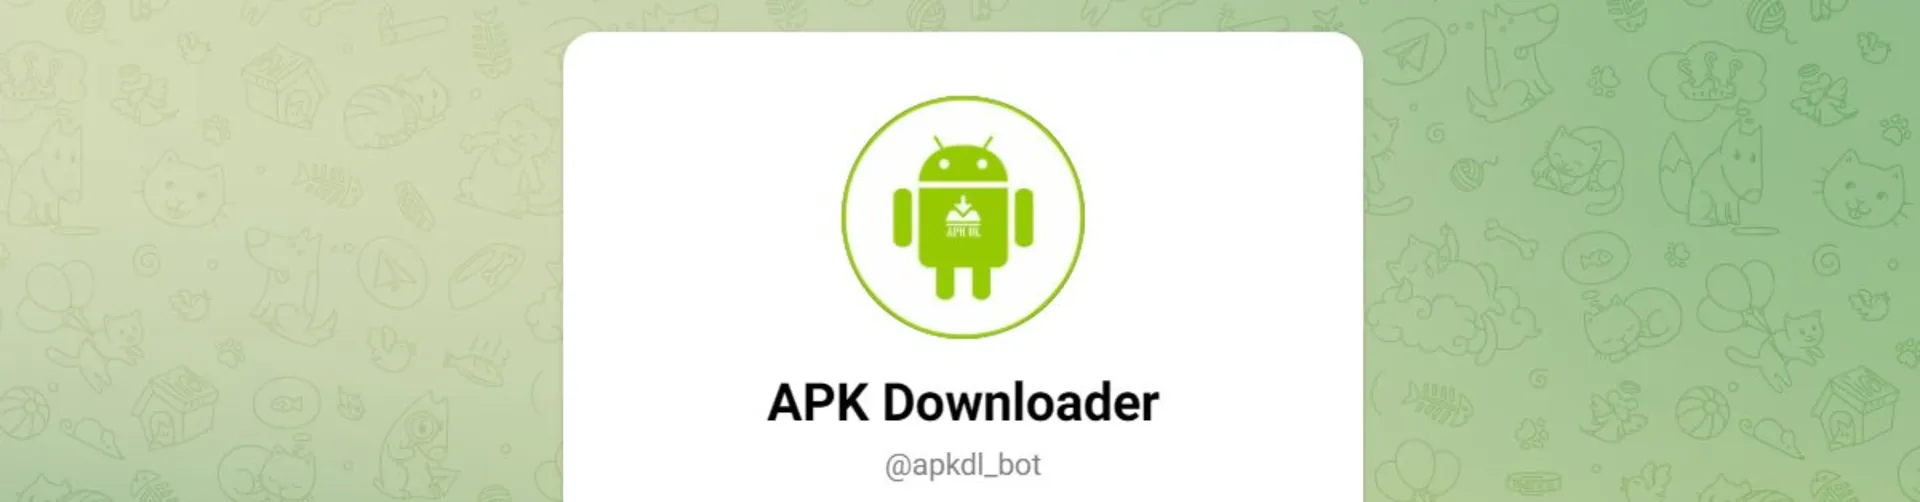 ربات APKDL تلگرام